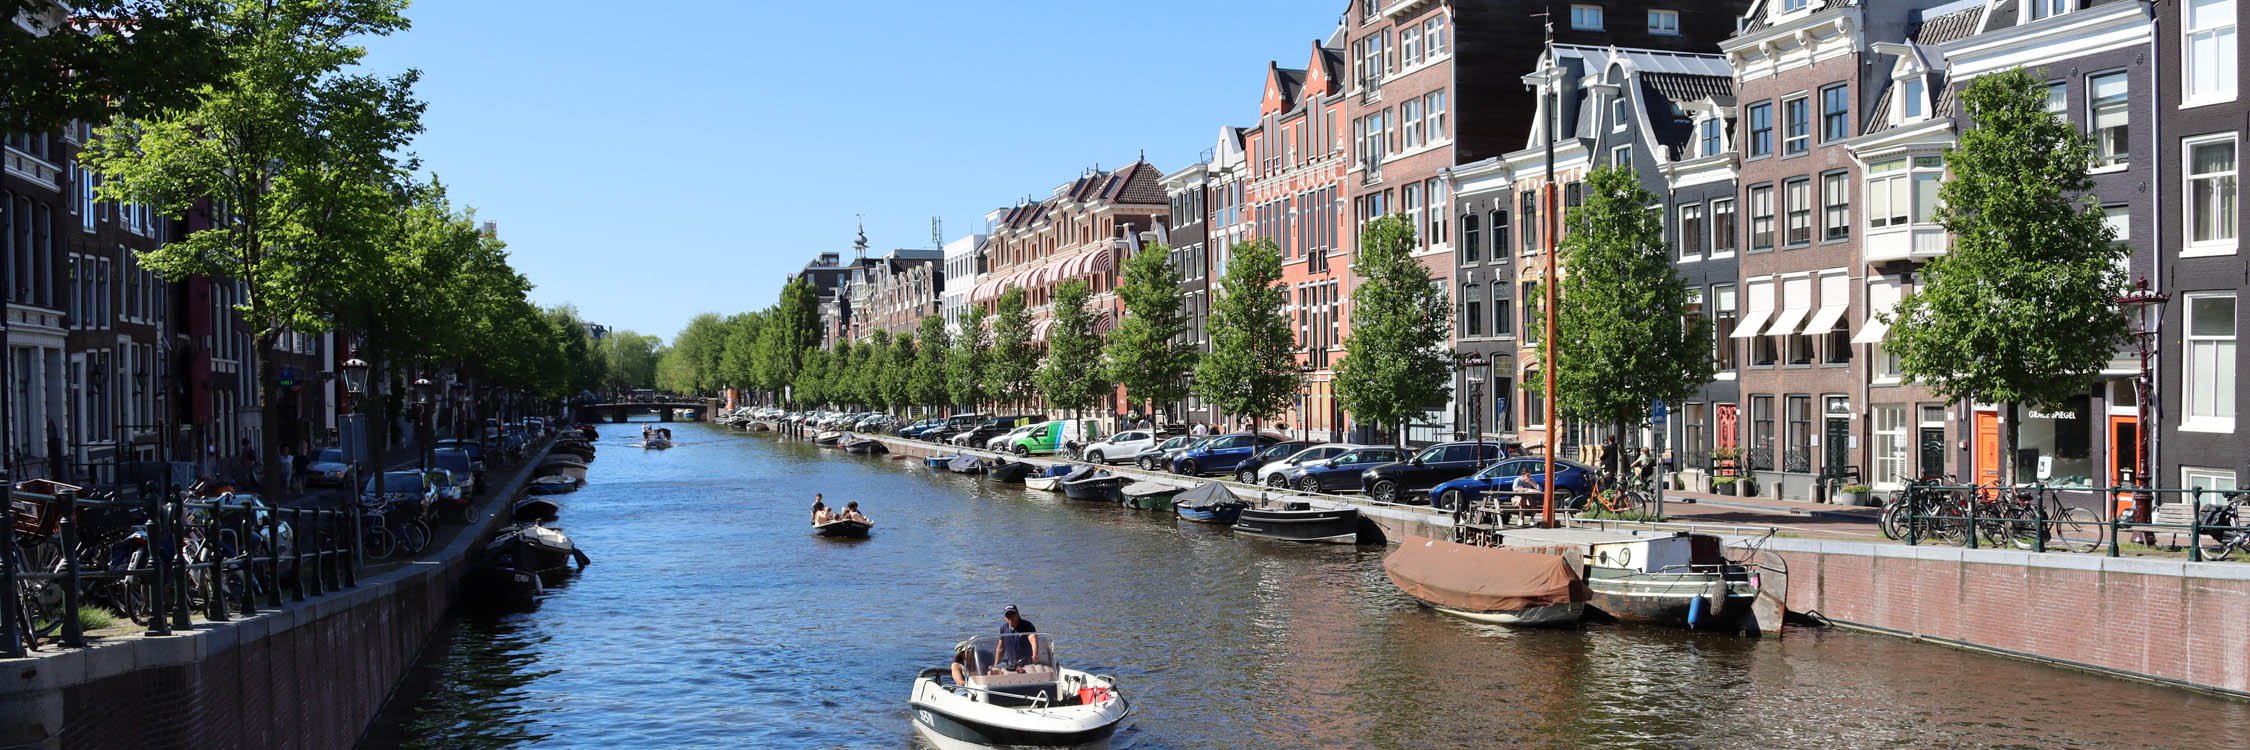 Amsterdamse Grachten.jpg